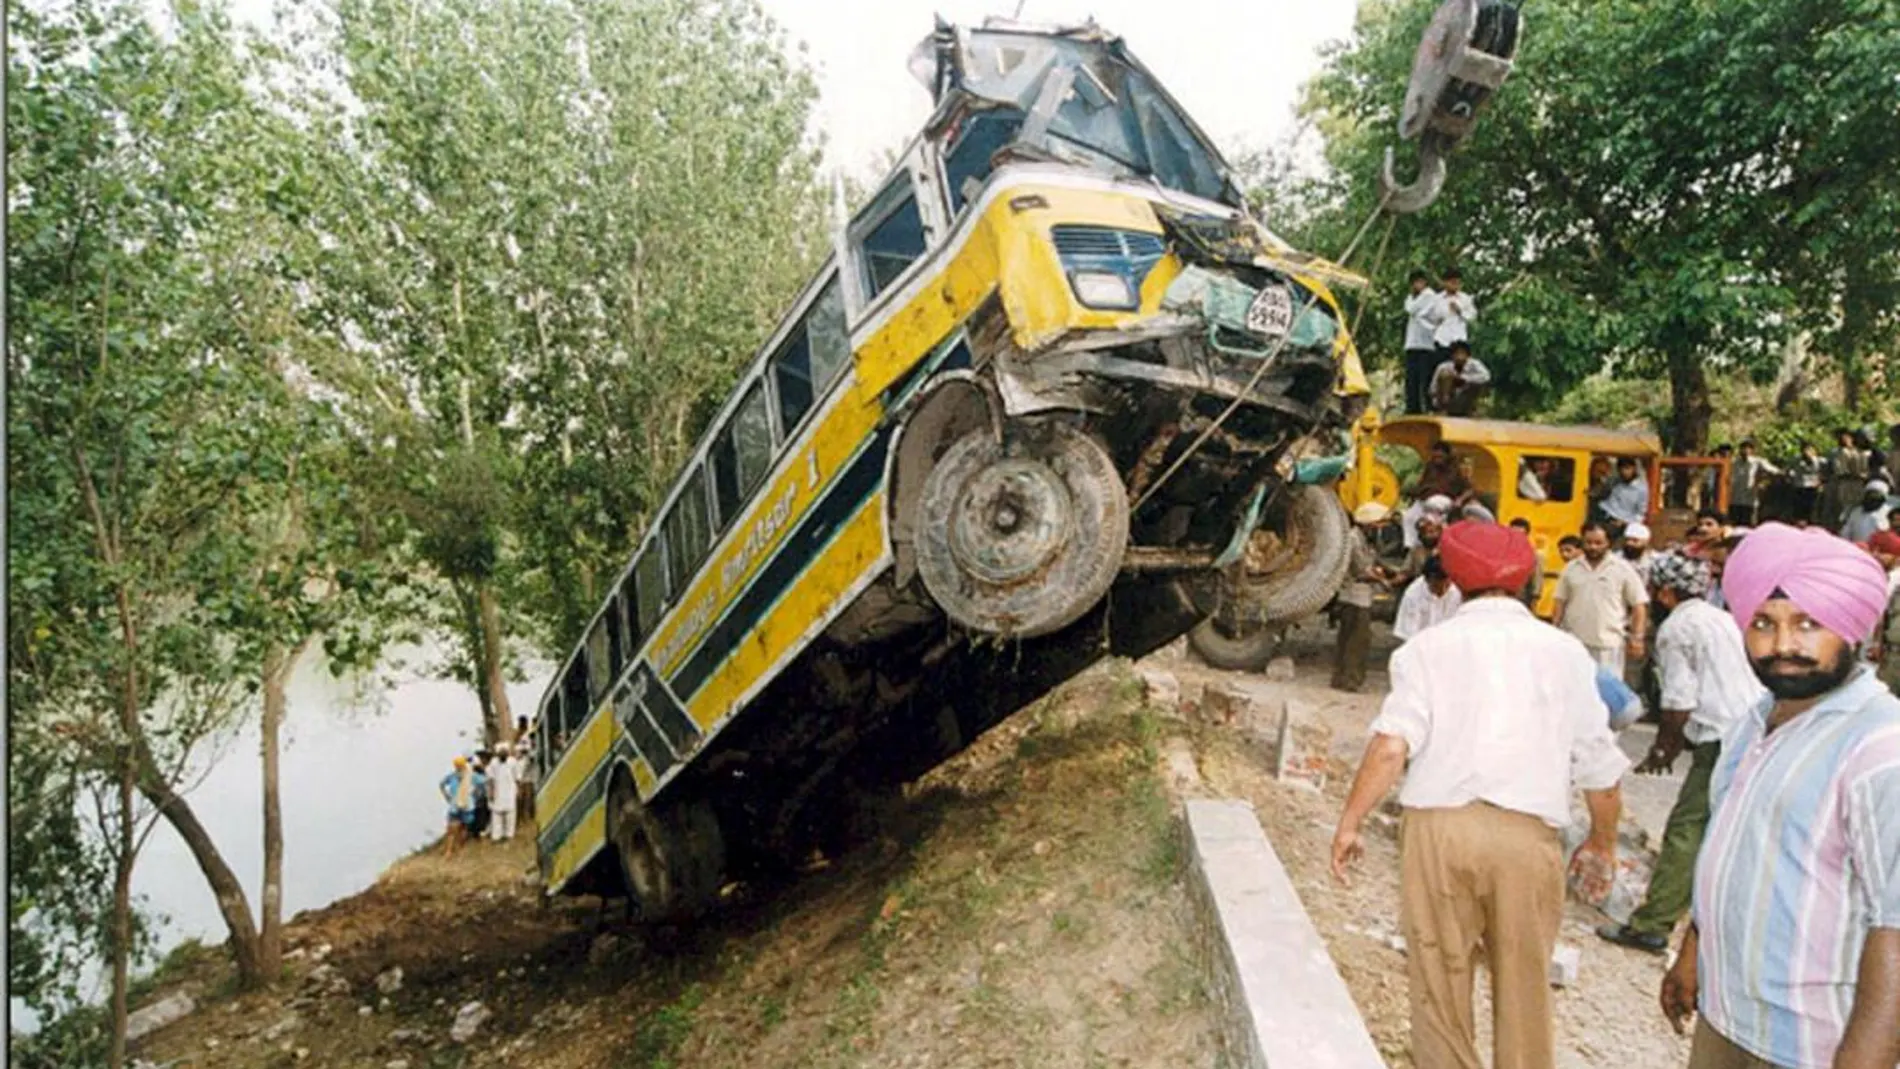 Los accidentes de tráfico graves son habituales en la India